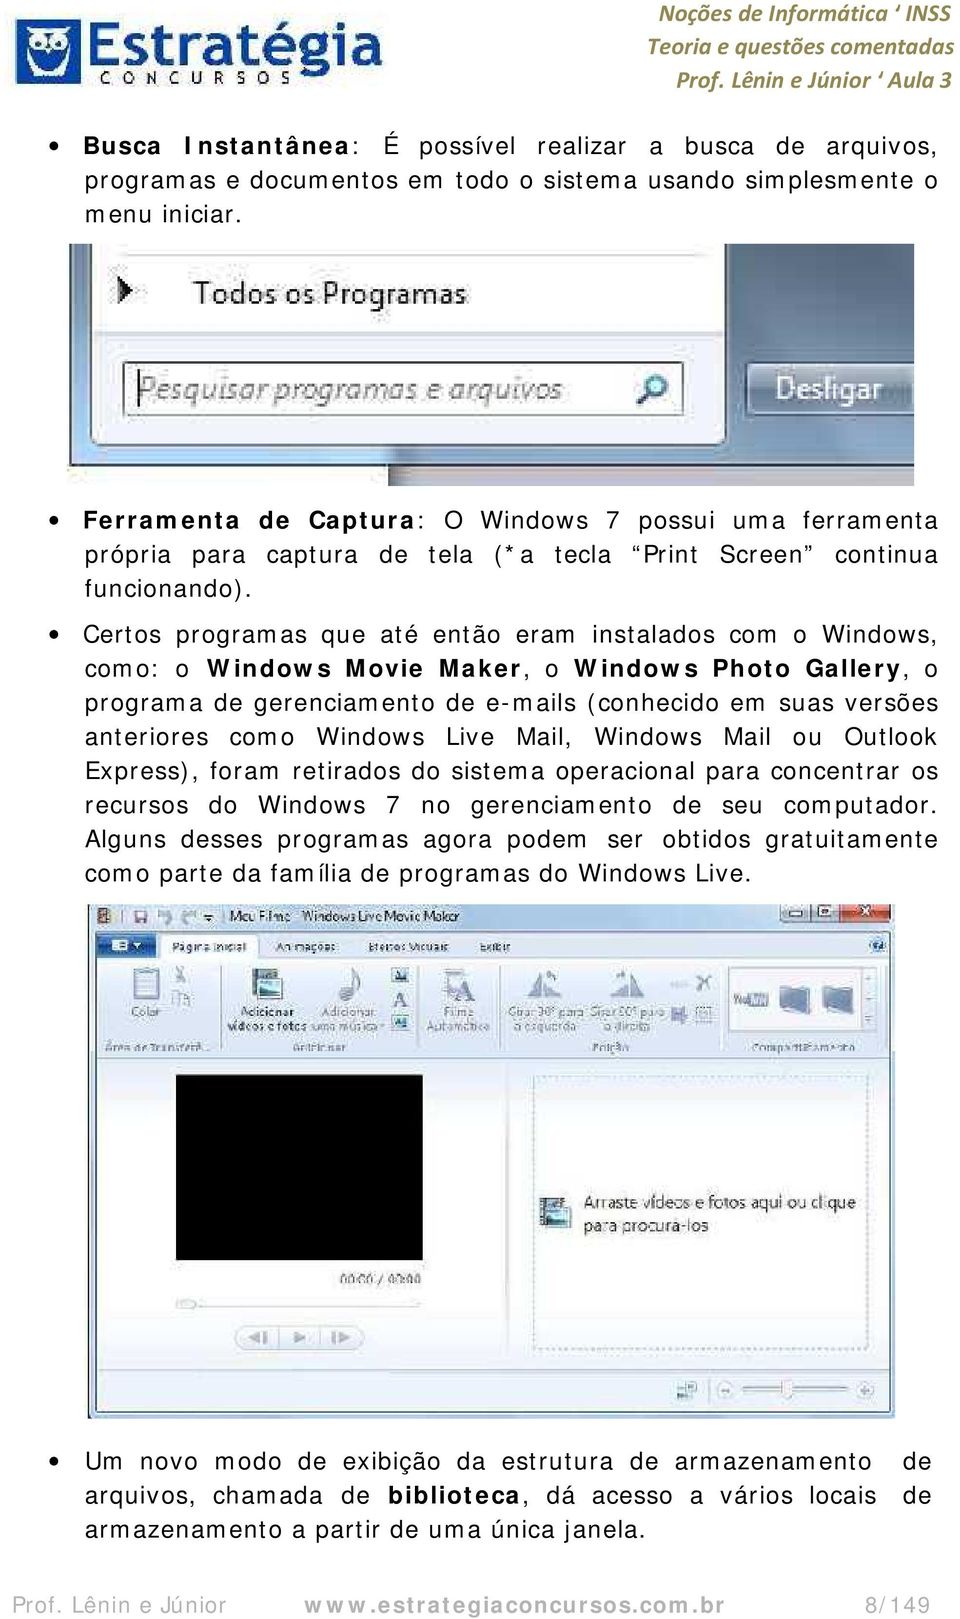 Certos programas que até então eram instalados com o Windows, como: o Windows Movie Maker, o Windows Photo Gallery, o programa de gerenciamento de e-mails (conhecido em suas versões anteriores como